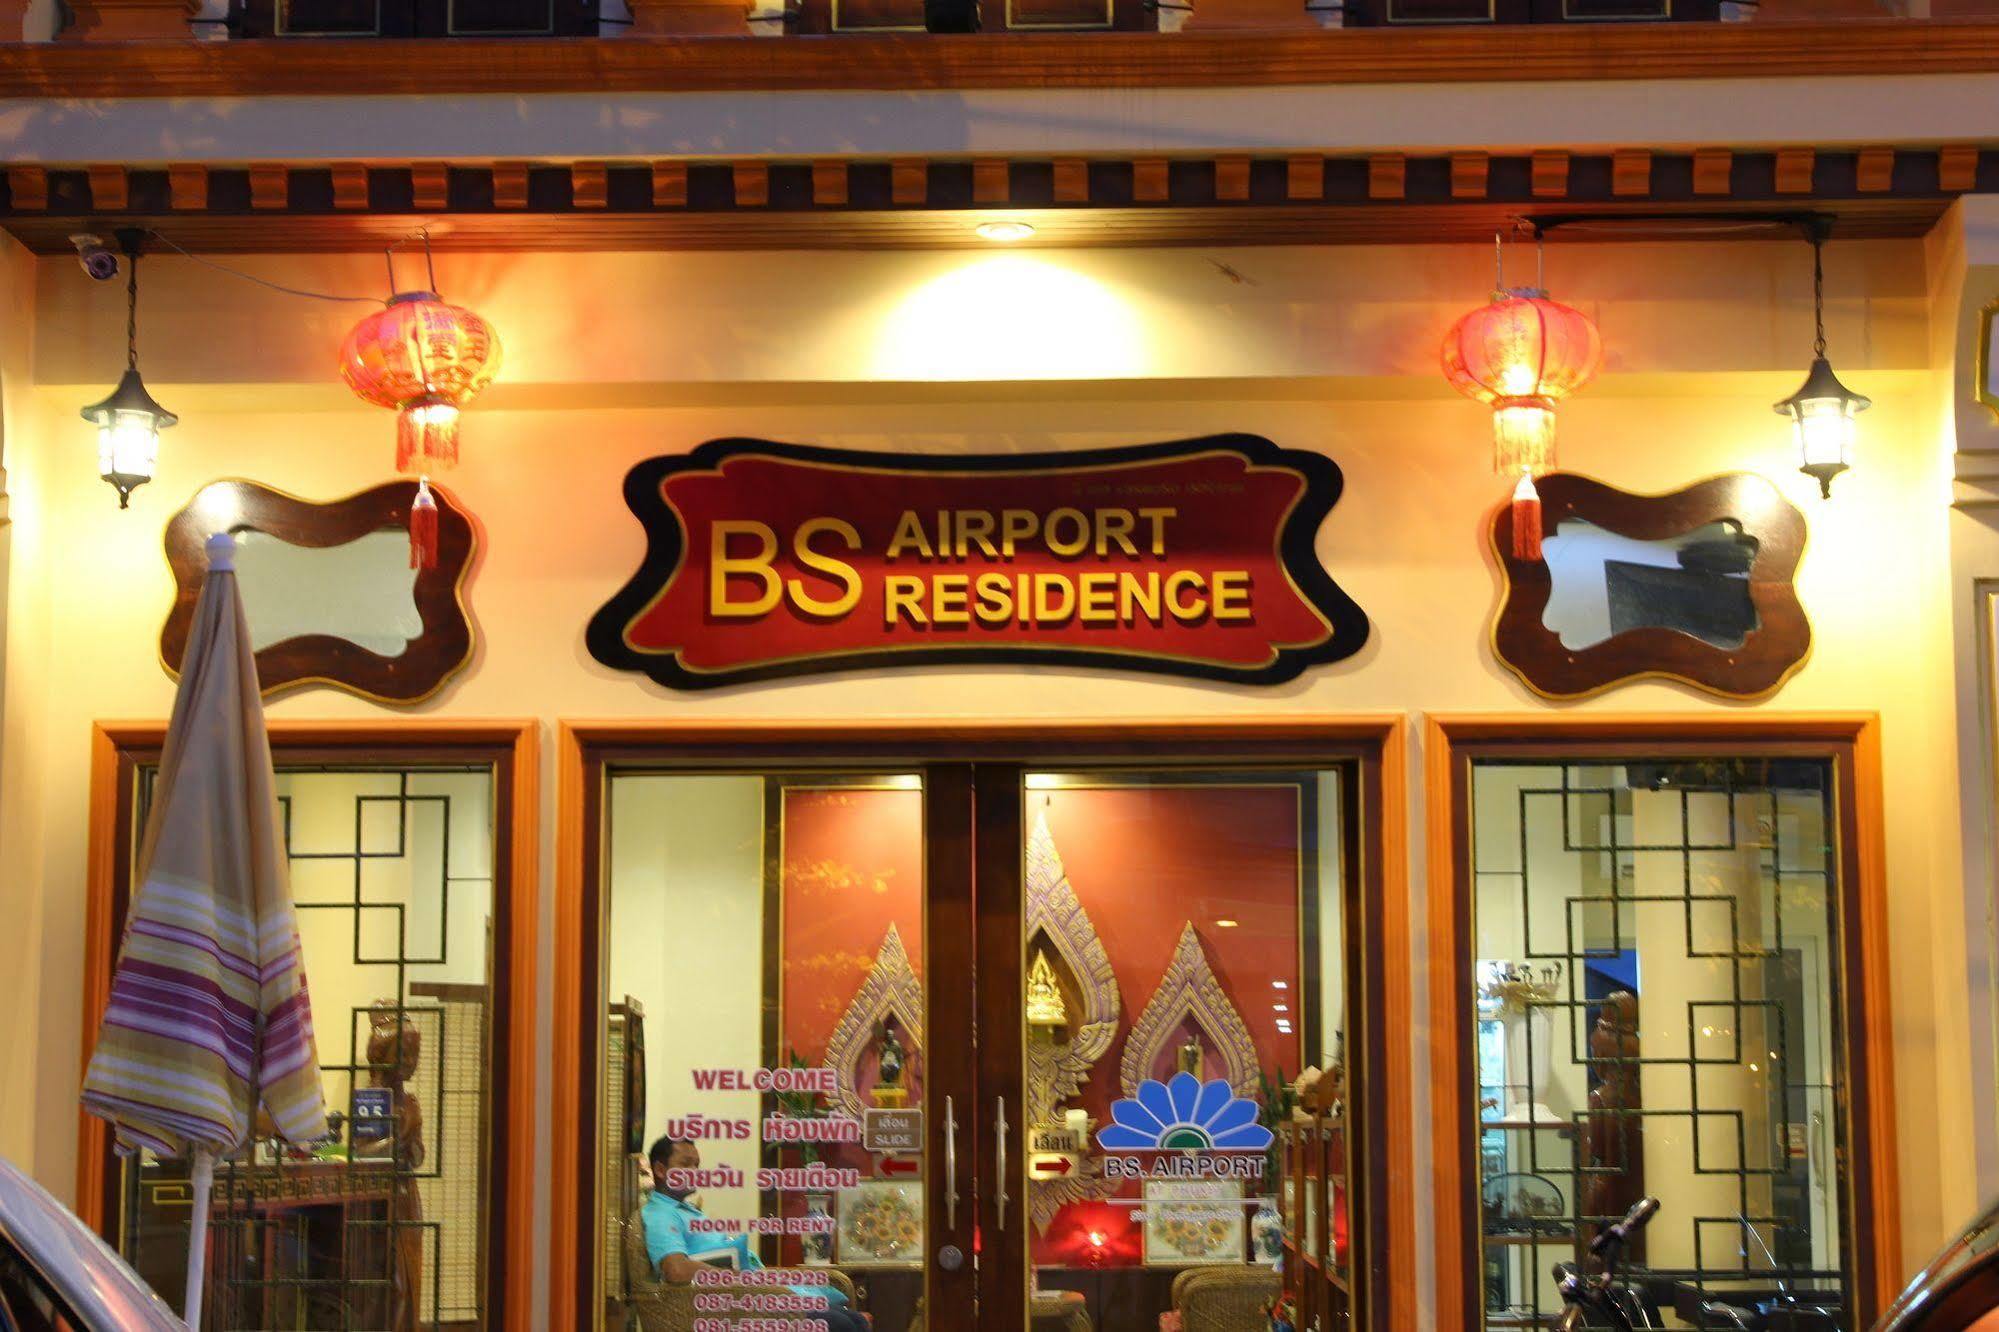 Bs Airport At Phuket Hotel Nai Yang Exterior photo